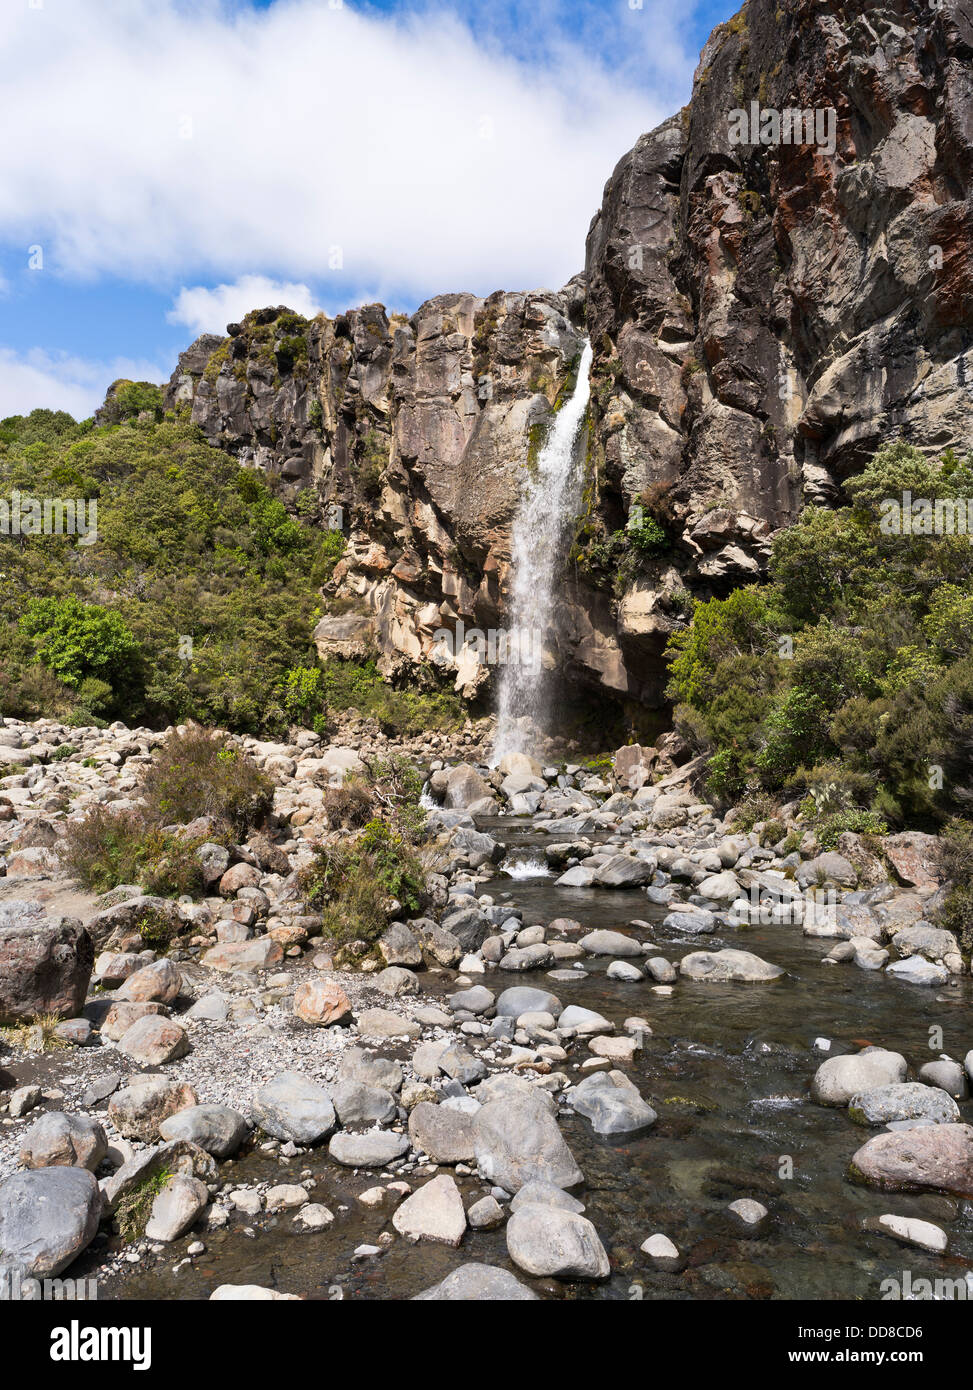 Dh Parc national de Tongariro TARANAKI FALLS Nouvelle-zélande Wairere cascade ruisseau Rocky River scenic Banque D'Images